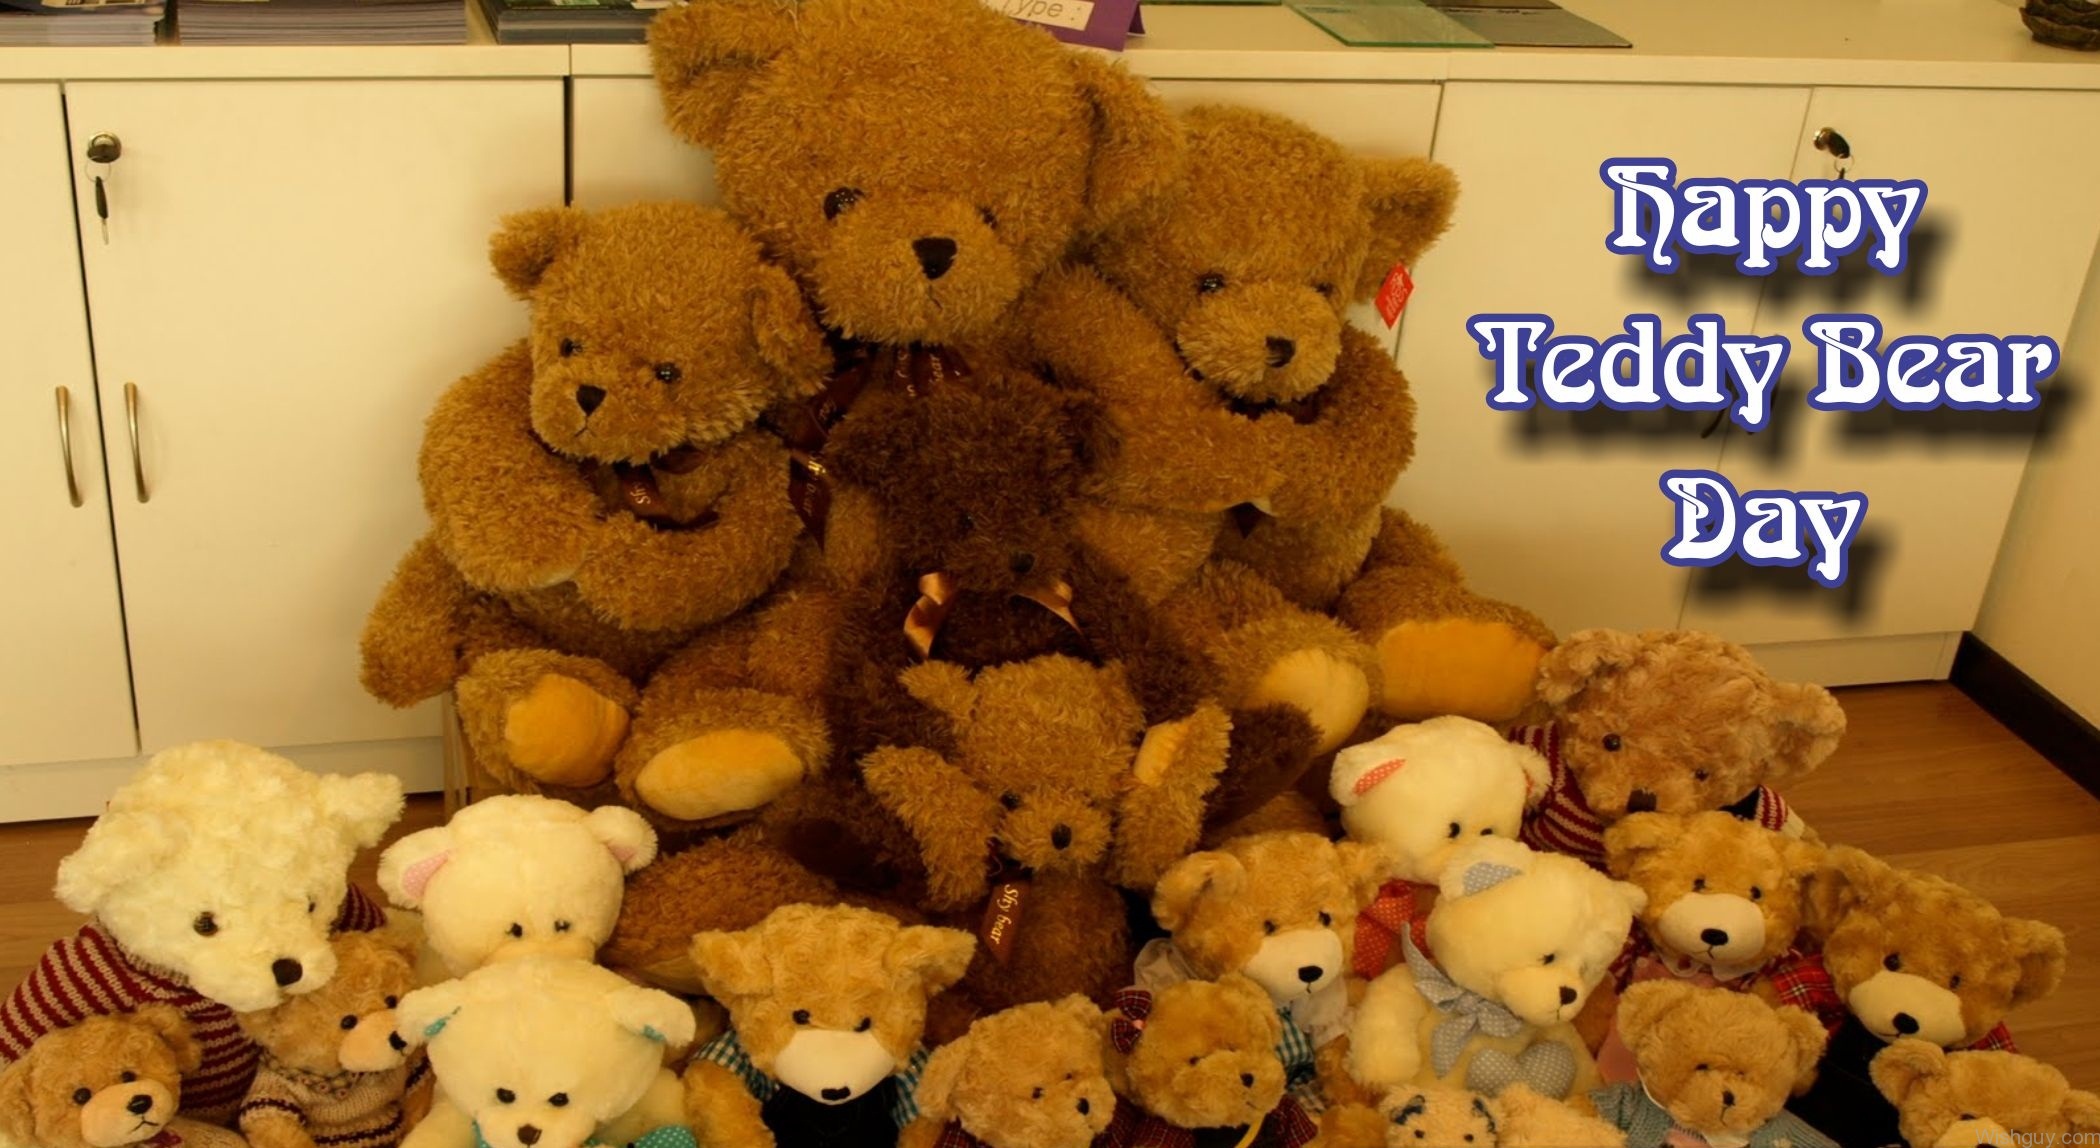 Where is the teddy bear. Happy Teddy Day. Teddy Bear Day. Картинки Teddy Bear Day. Счастливый плюшевый мишка.